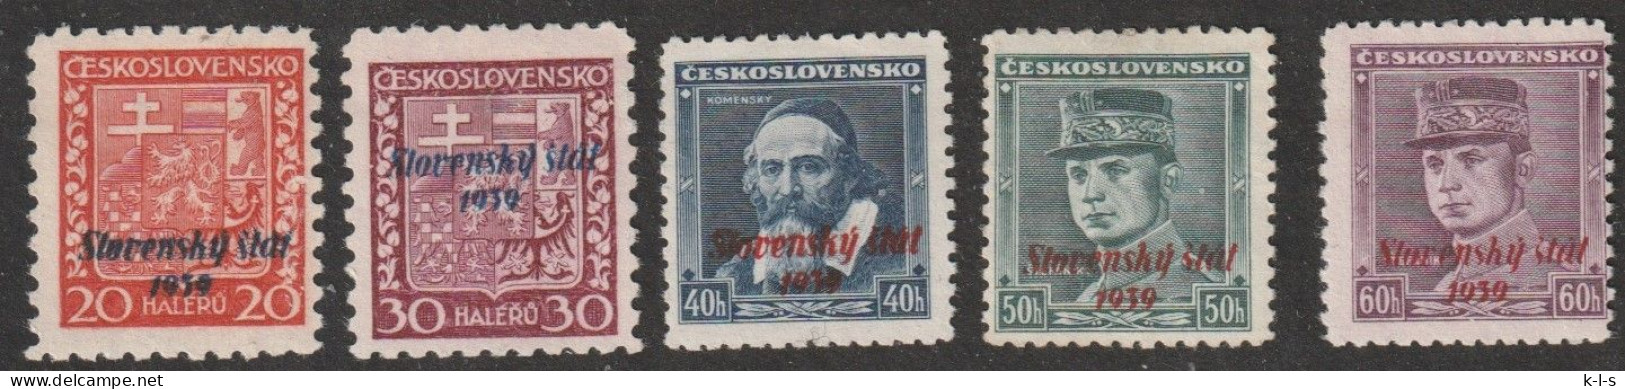 Slowakei: 1939, Freimarken. Mi. Nr. 4, 6, 7, 8, 10, Marken Der Tschechoslowakei Sowie Slowakei.   **/MNH - Unused Stamps